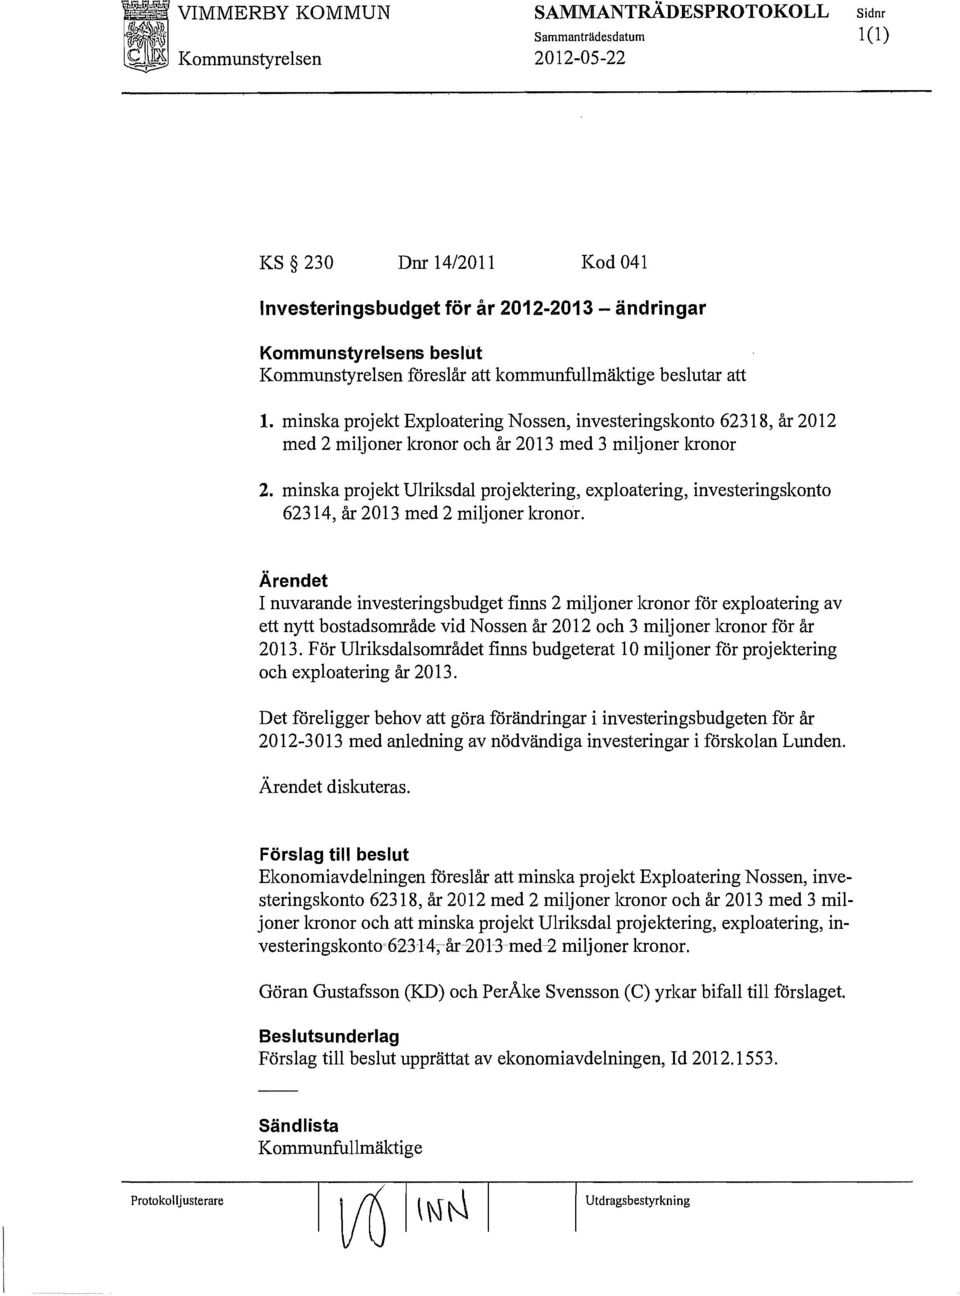 minska projekt Ulriksdal projektering, exploatering, investeringskonto 62314, år 2013 med 2 miljoner kronor.